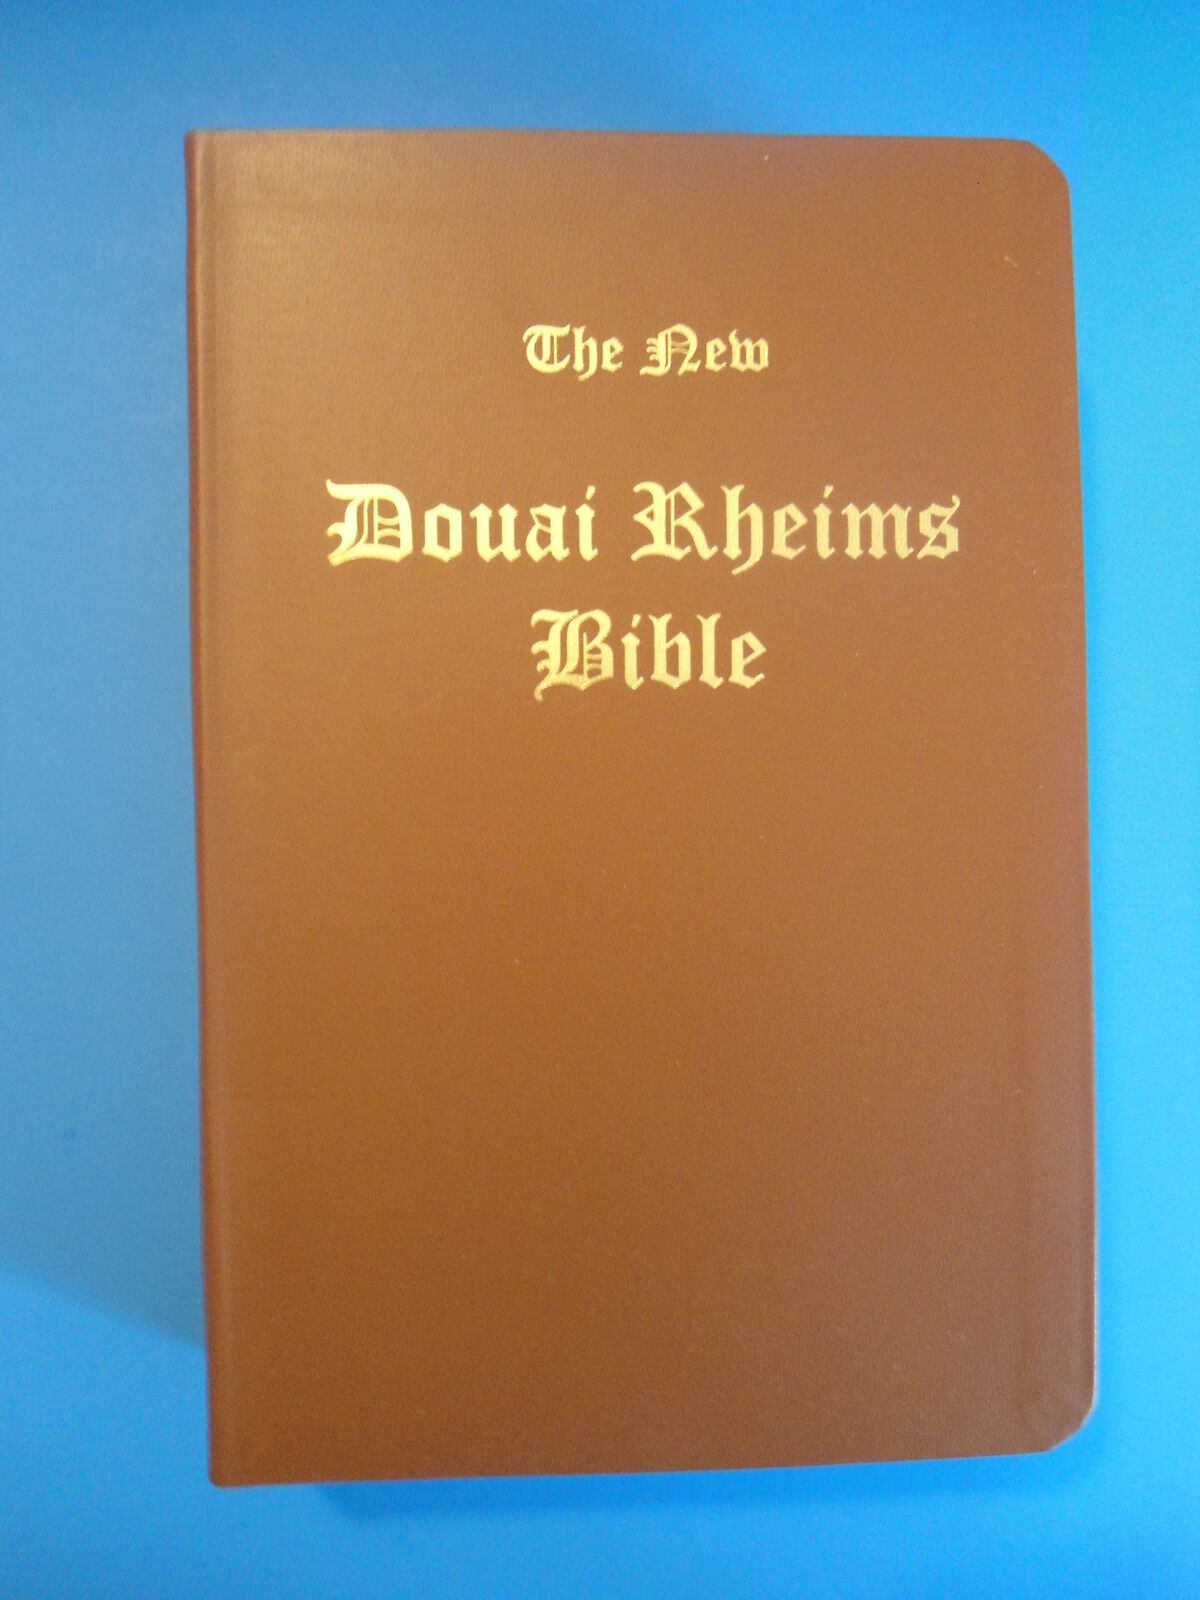 Douai-Douay Rheims Bible (New) ; Not a Challoner edition. First edition 2011.  